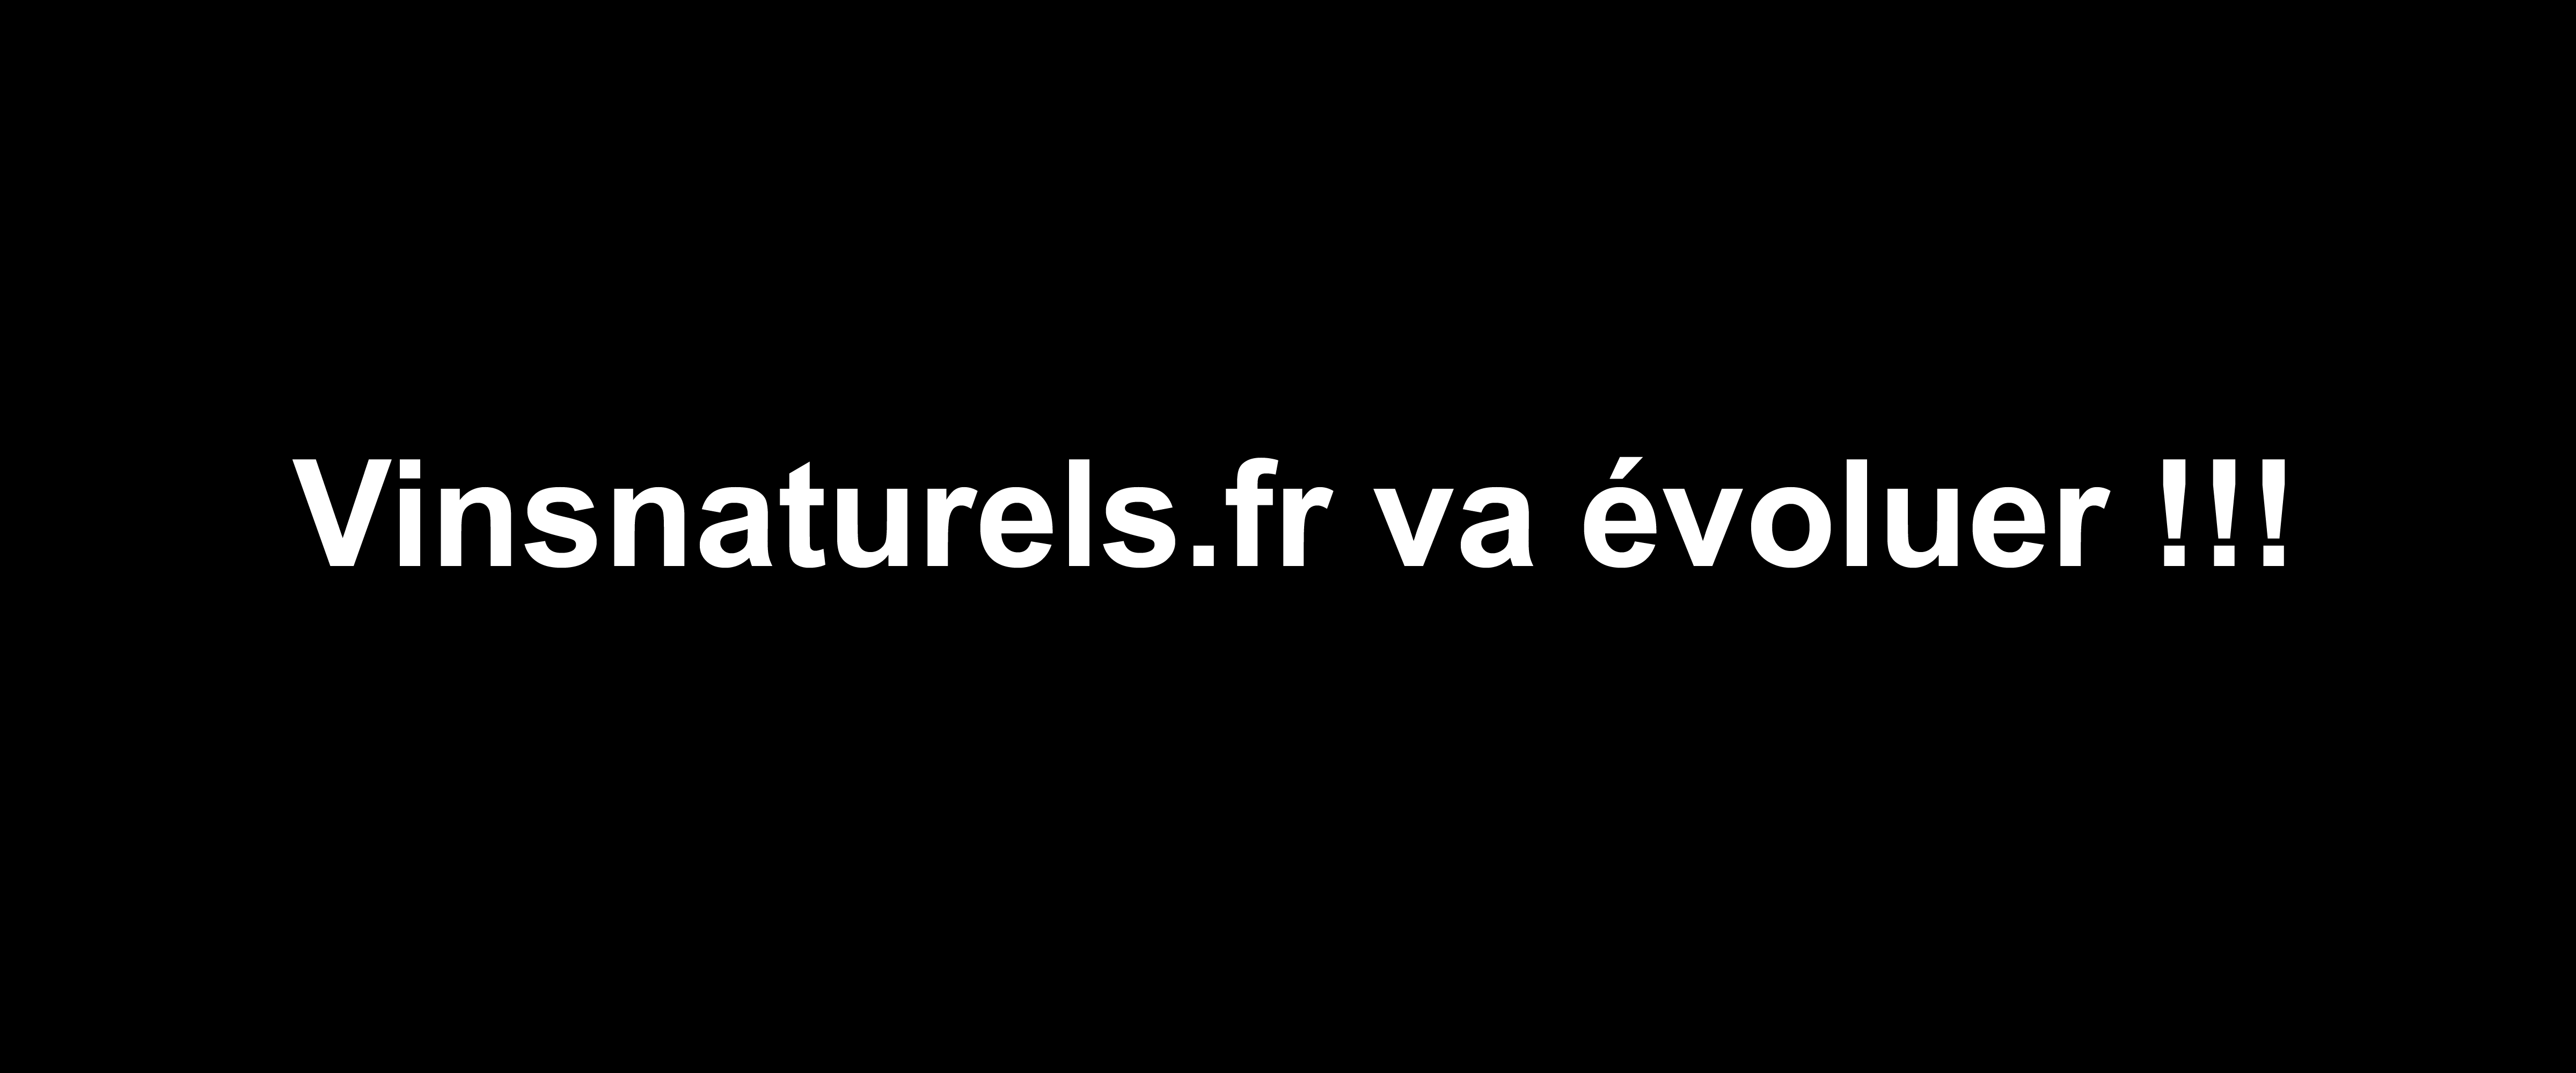 Vinsnaturels.fr